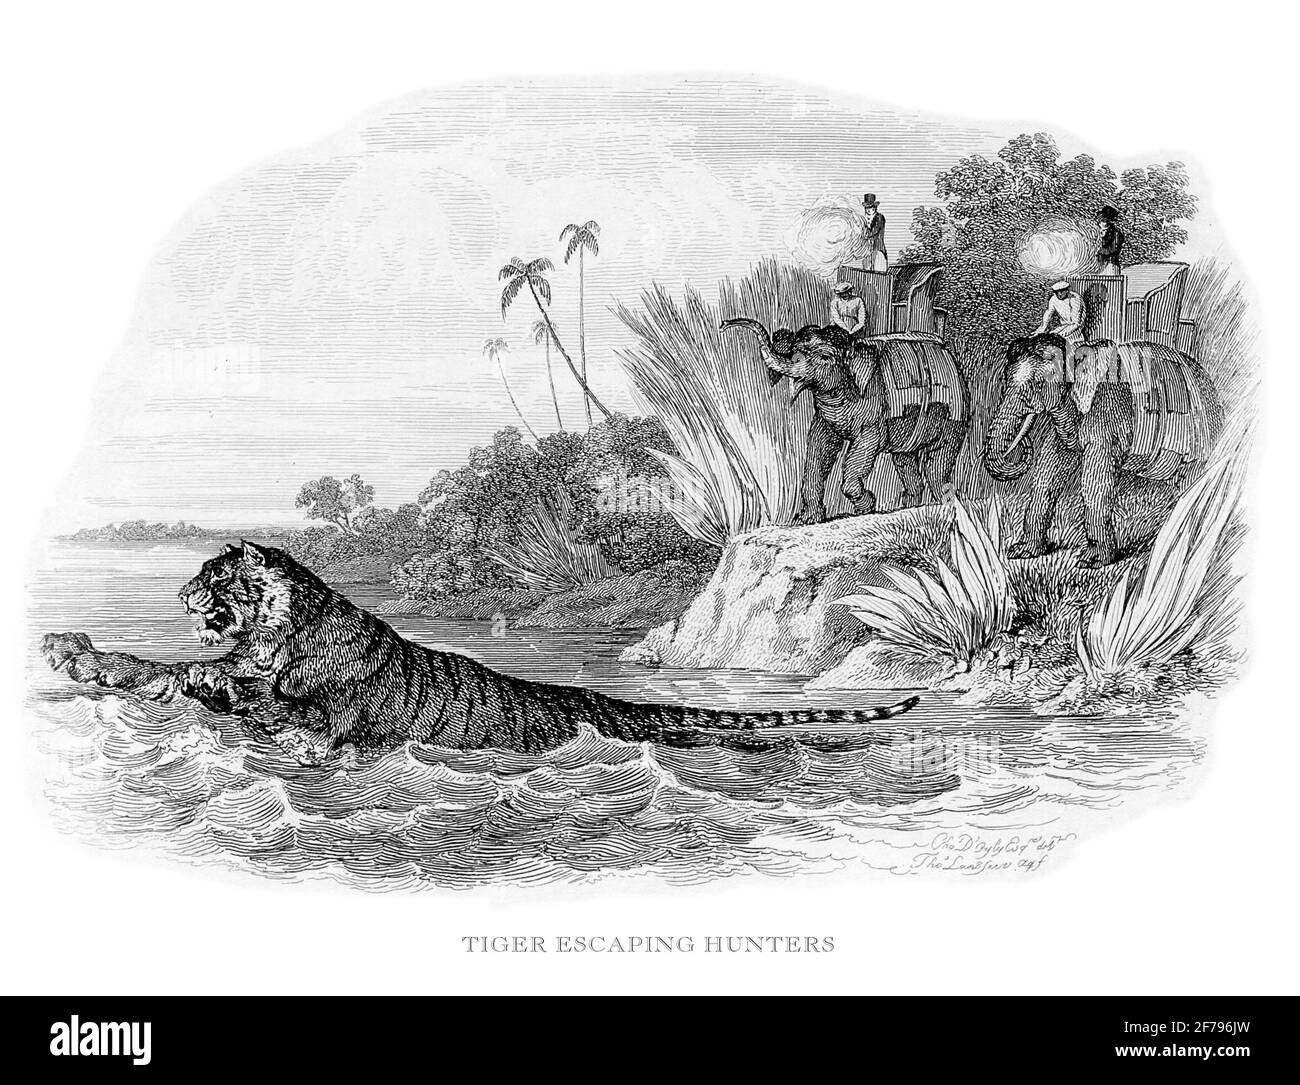 Cazadores de escapes de tigre grabados Ilustración stoc Foto de stock